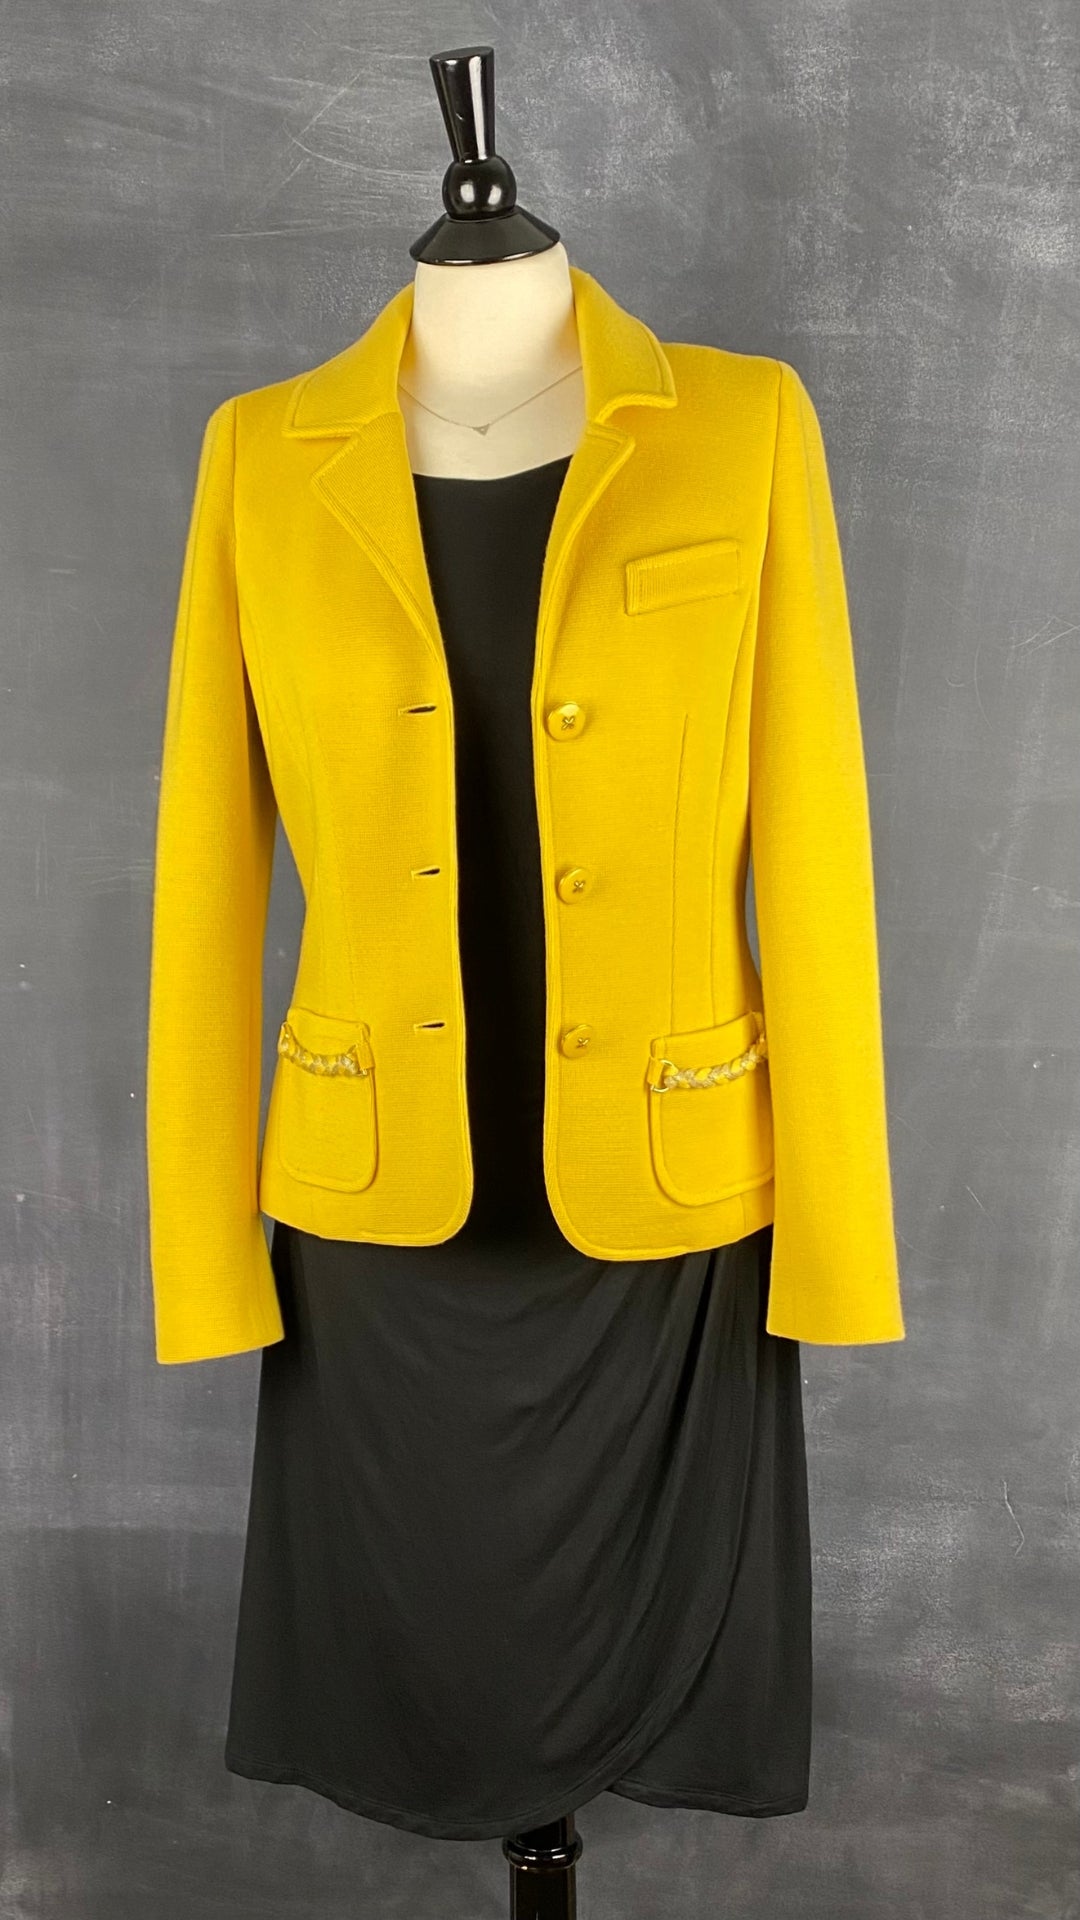 Robe noire drapée La Fée Maraboutée, taille s-m. Vue de l'agencement avec le blazer en laine jaune Luisa Spagnoli.